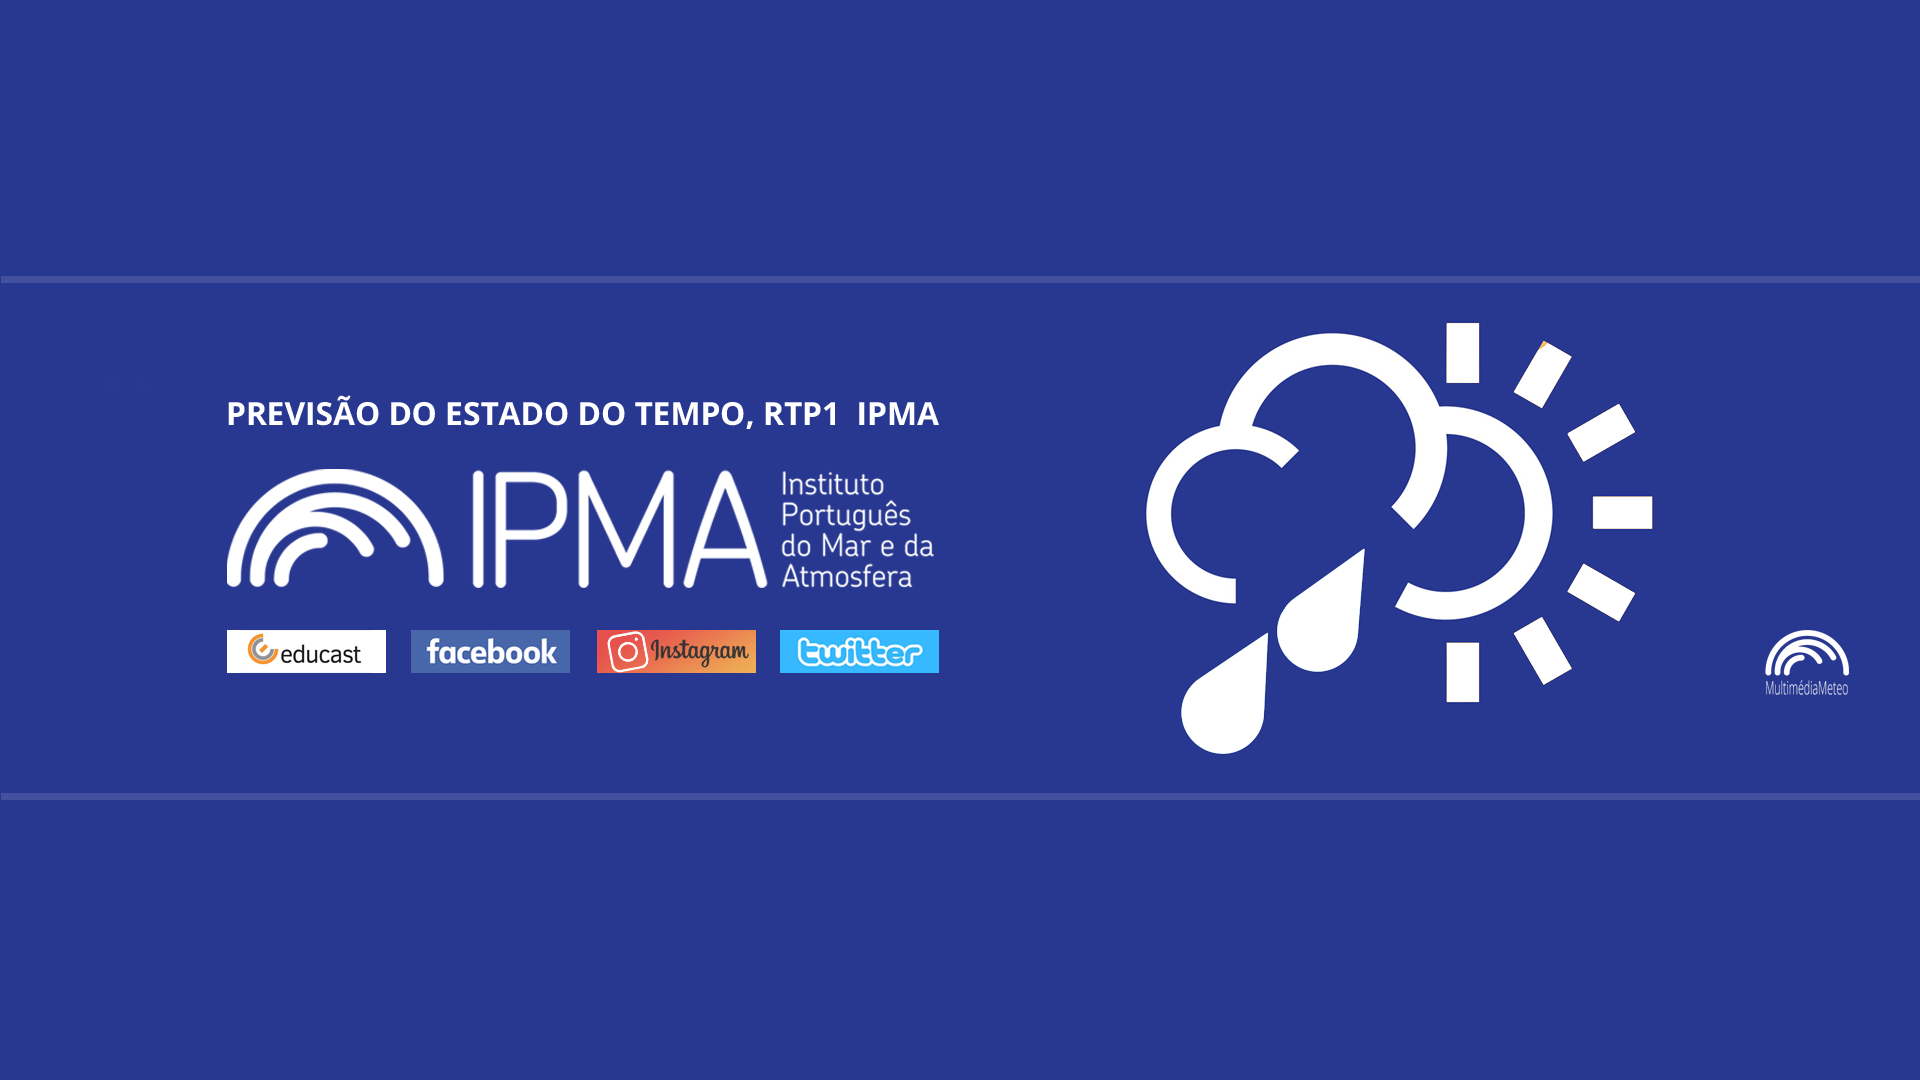  Previsão do estado do tempo, RTP1, 07-02-2022, IPMA.